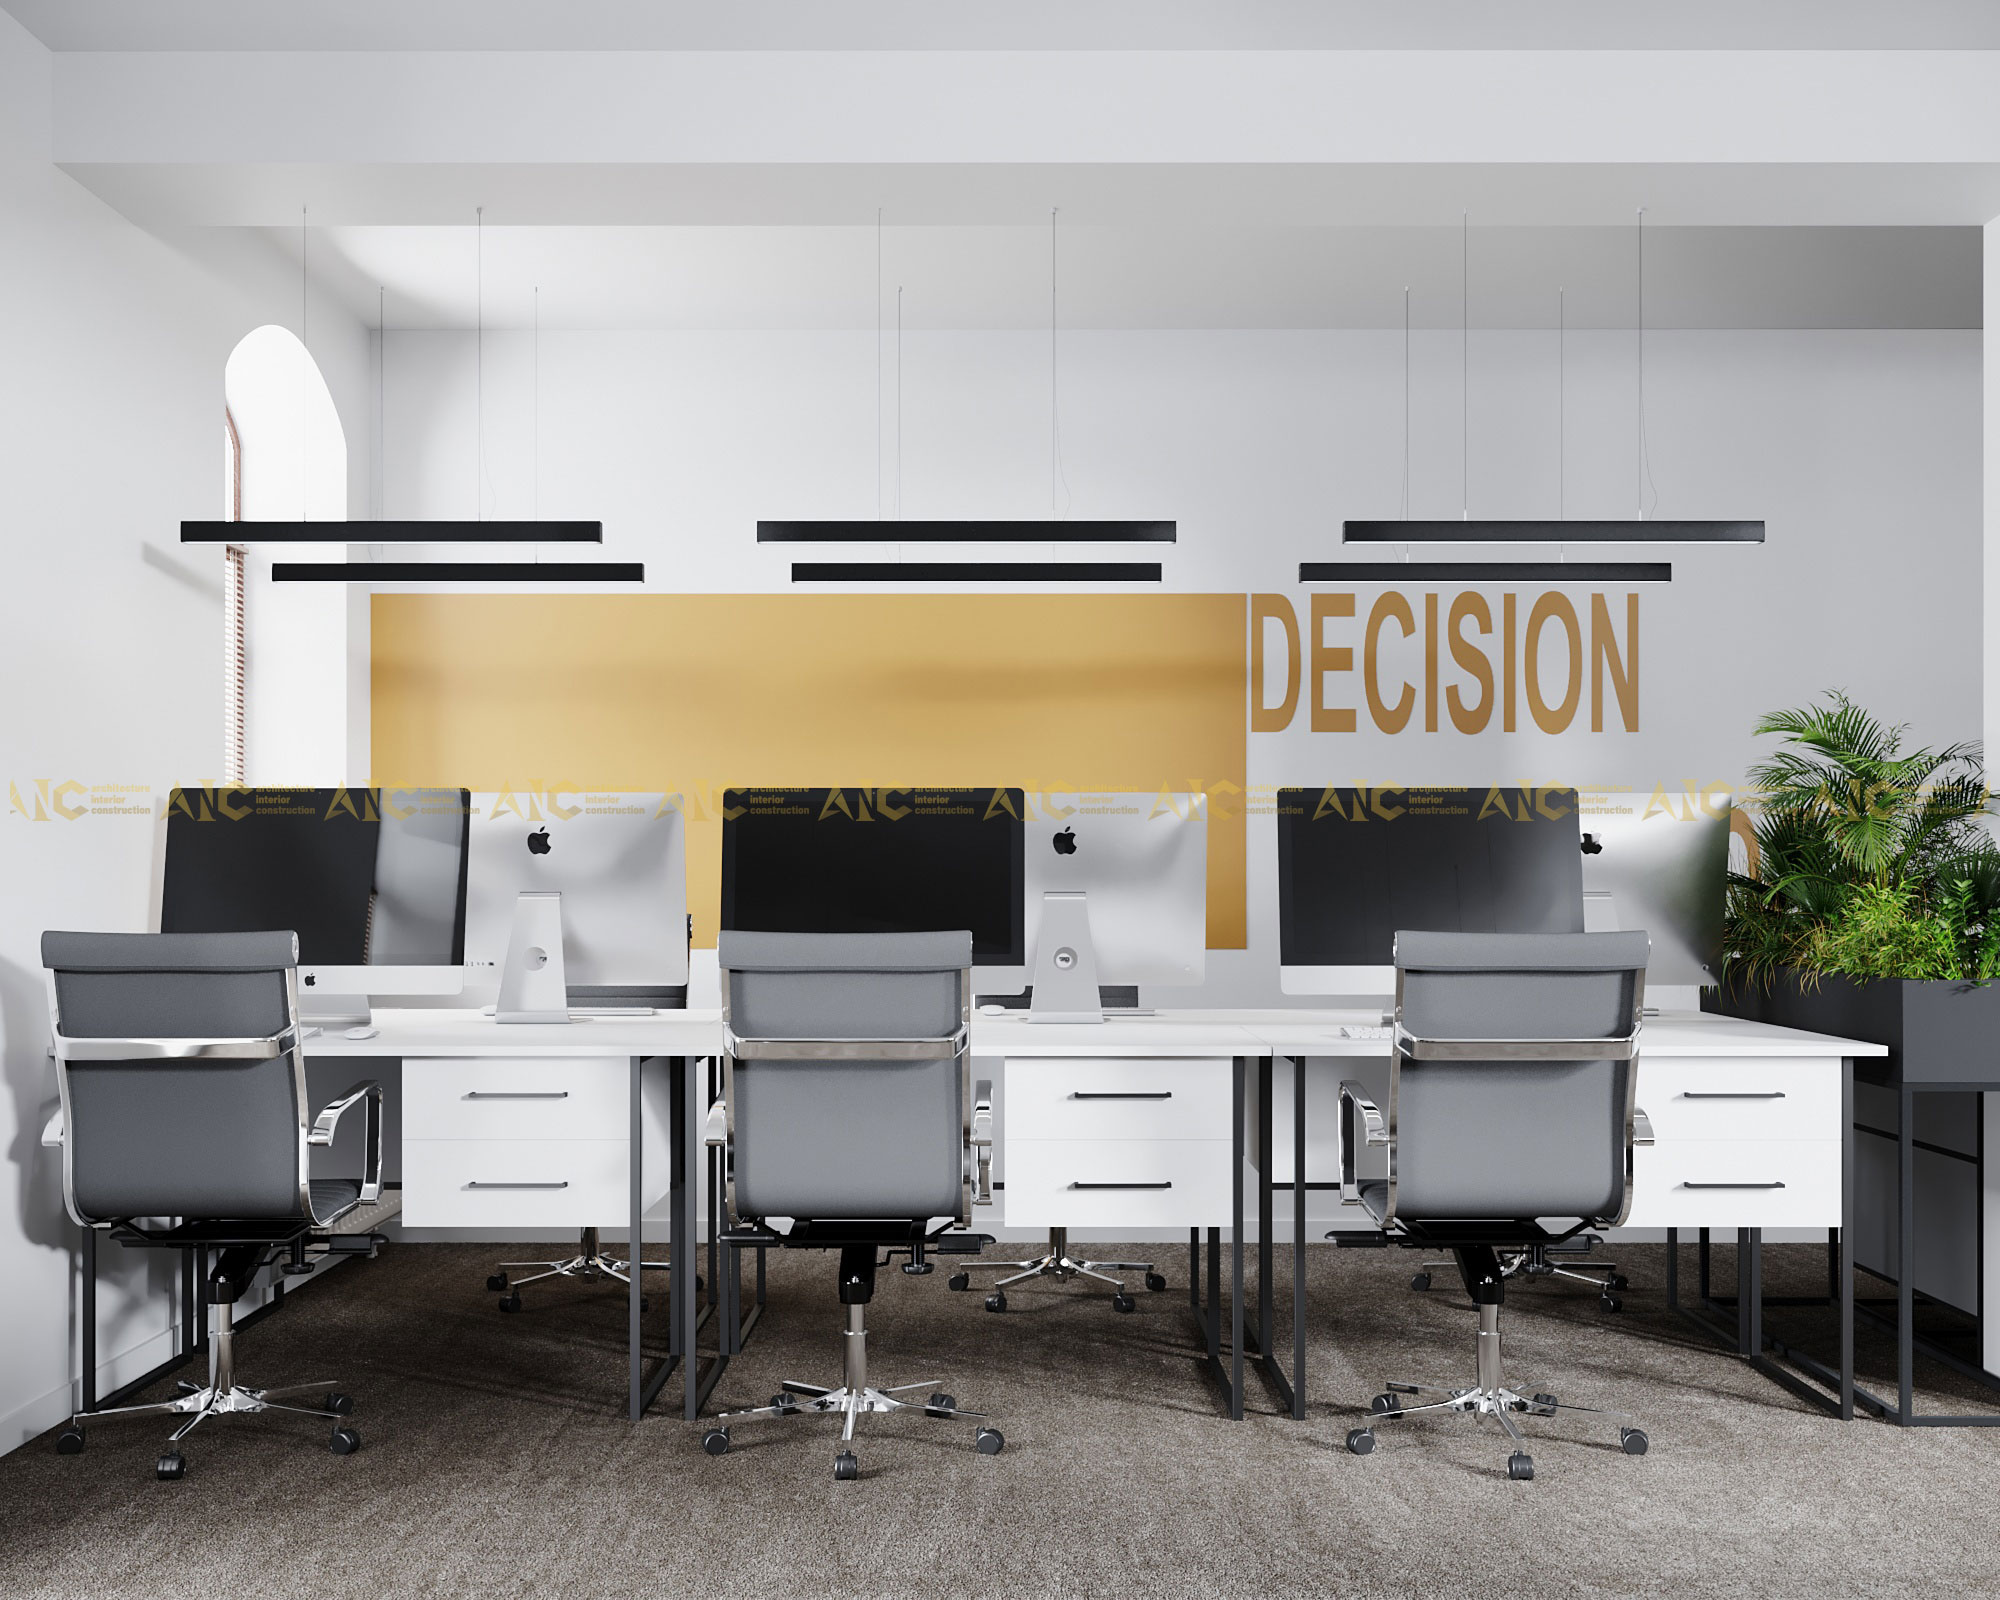 Mẫu thiết kế văn phòng hạng A đang được nhiều doanh nghiệp ưa chuộng. Nó thể hiện được sự sang trọng và tiện nghi